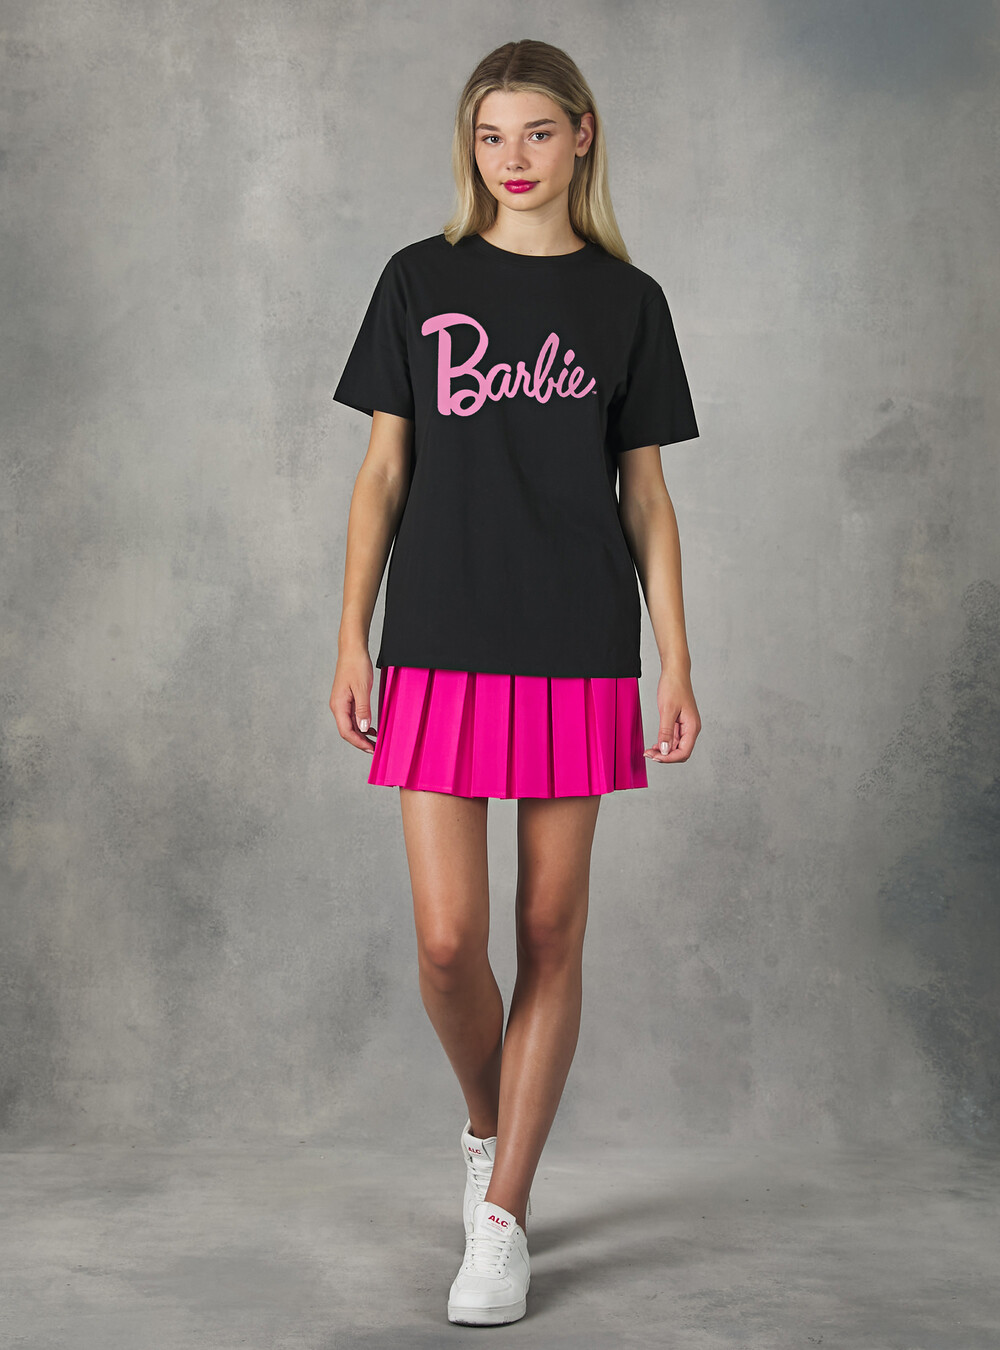 T-shirt Barbie / Alcott, Alcott